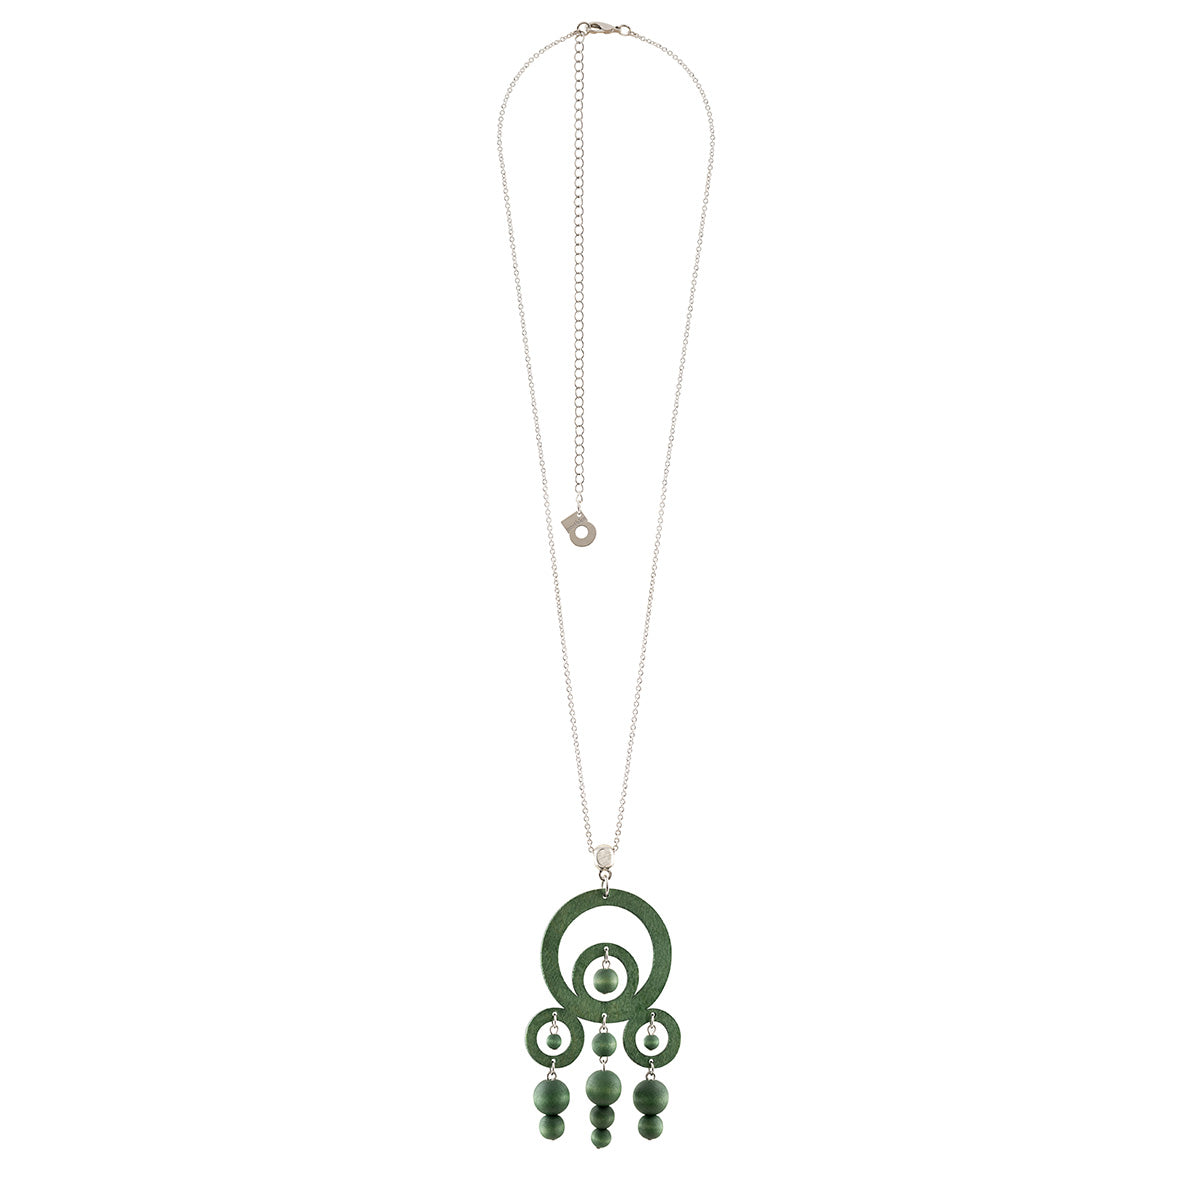 Karambola pendant, green